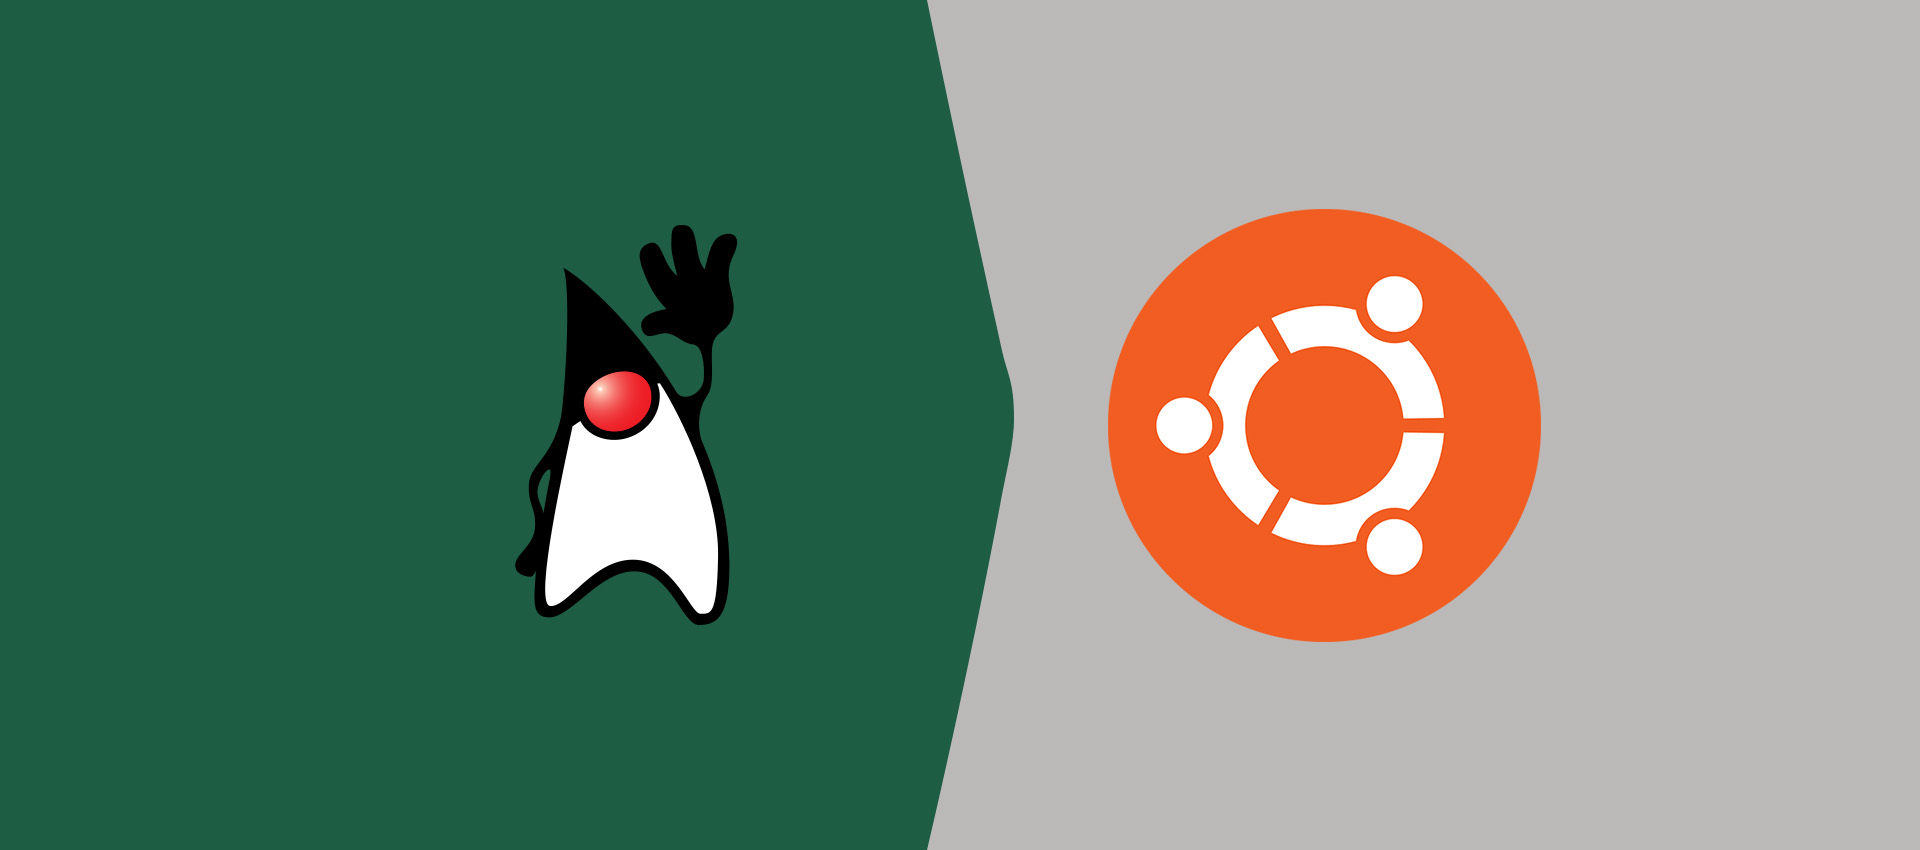 How To Install OpenJDK 12 On Ubuntu